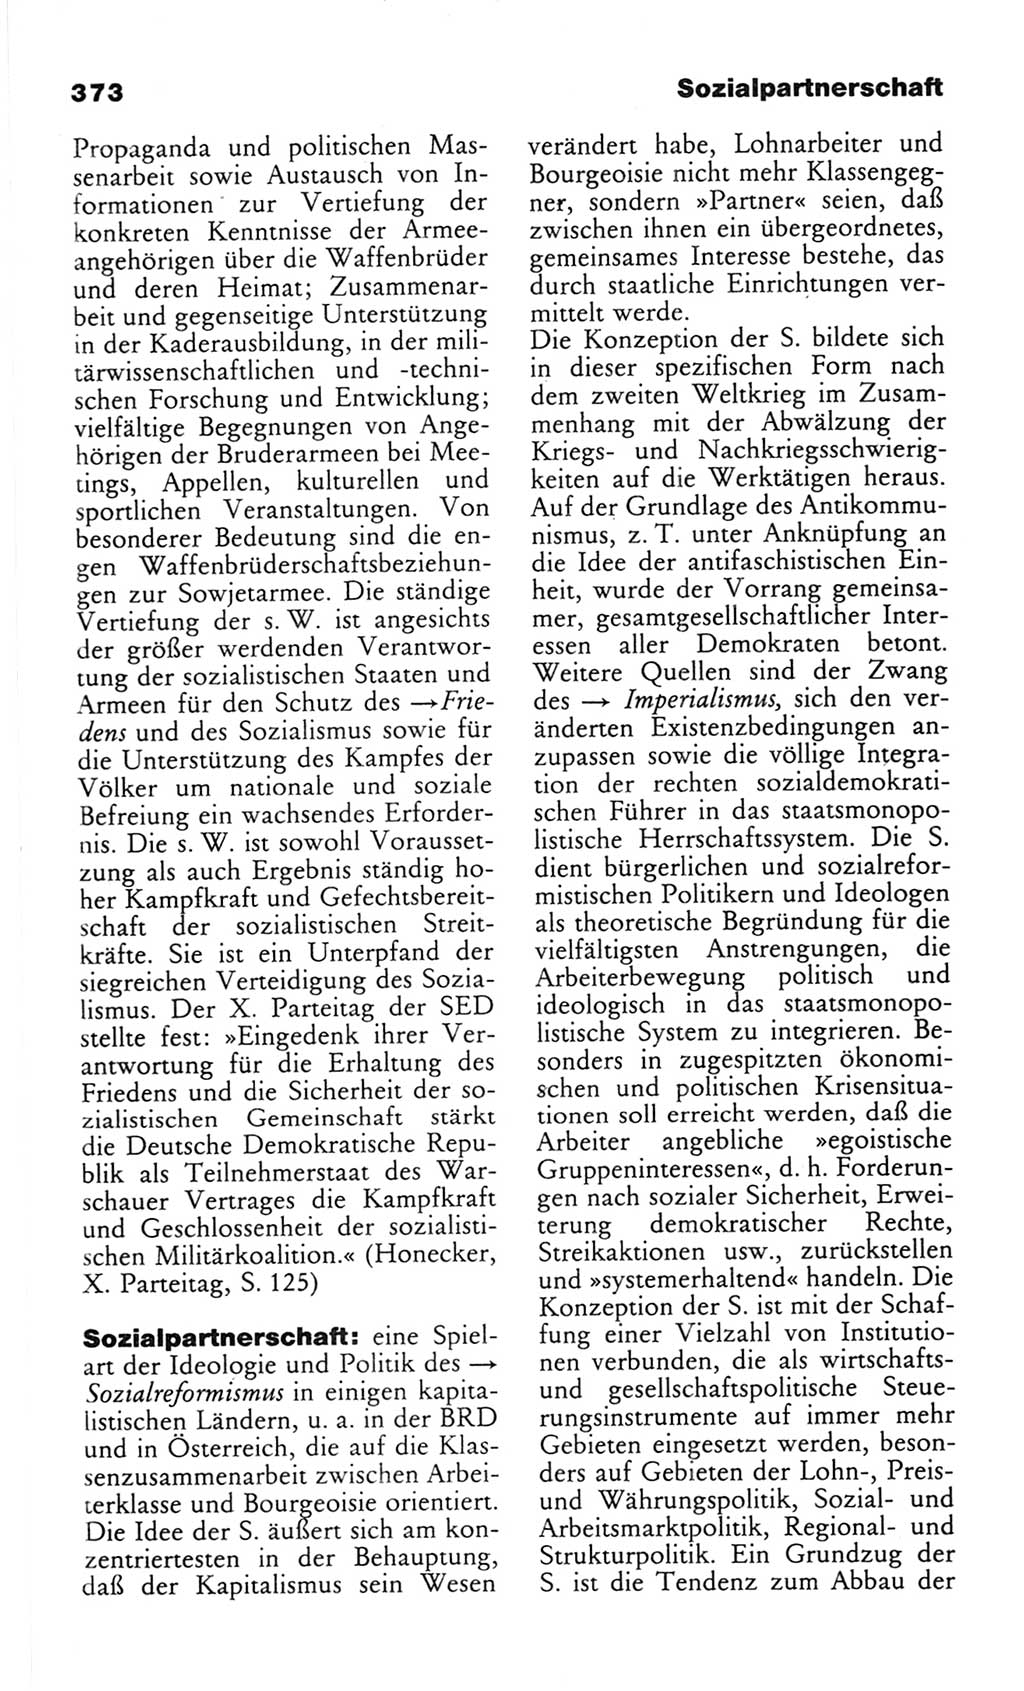 Wörterbuch des wissenschaftlichen Kommunismus [Deutsche Demokratische Republik (DDR)] 1982, Seite 373 (Wb. wiss. Komm. DDR 1982, S. 373)